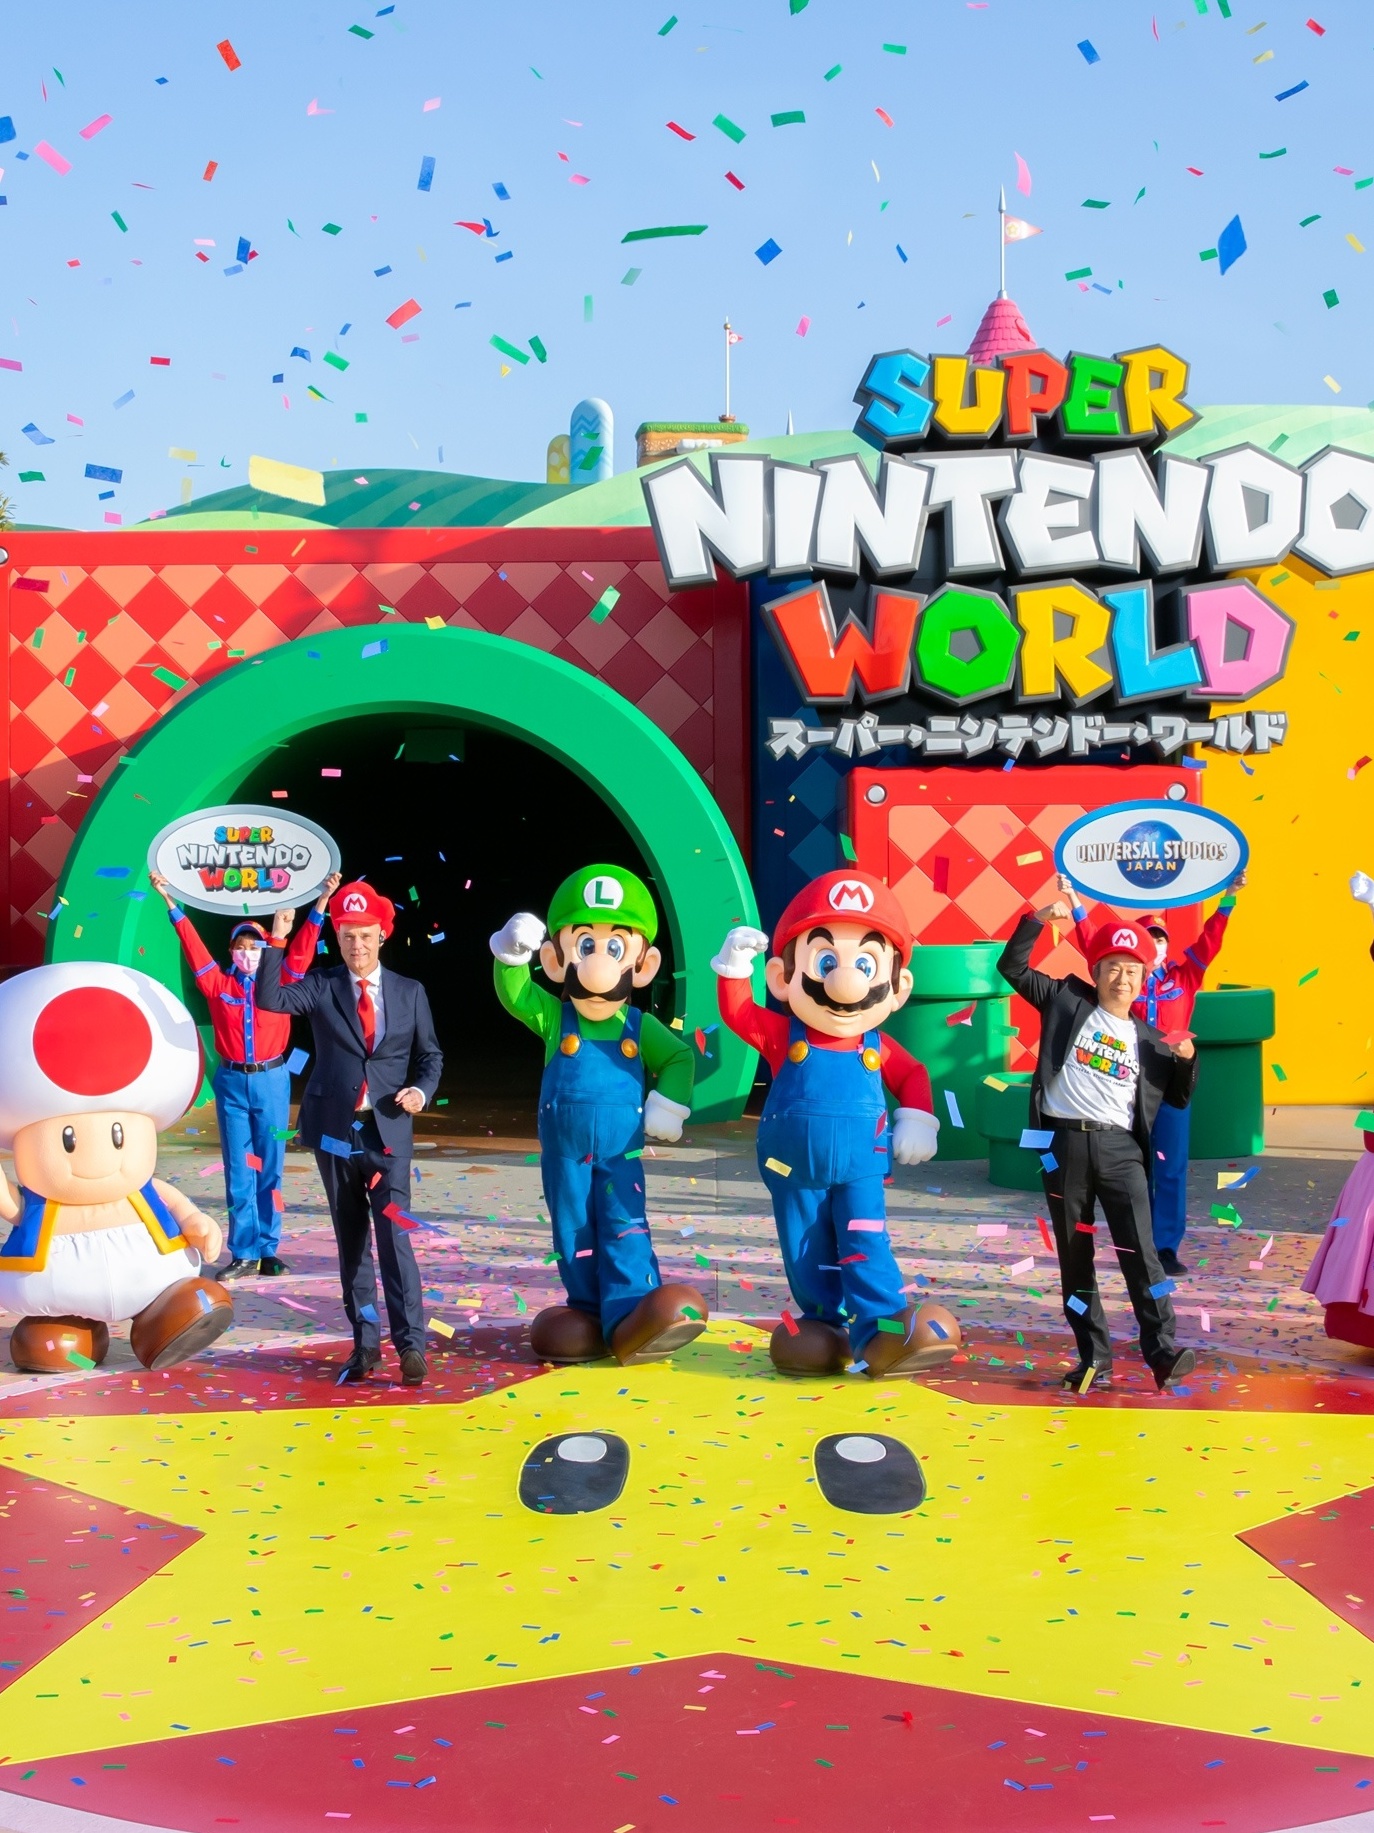 Super Mario World é relançado pela Nintendo - TecStudio